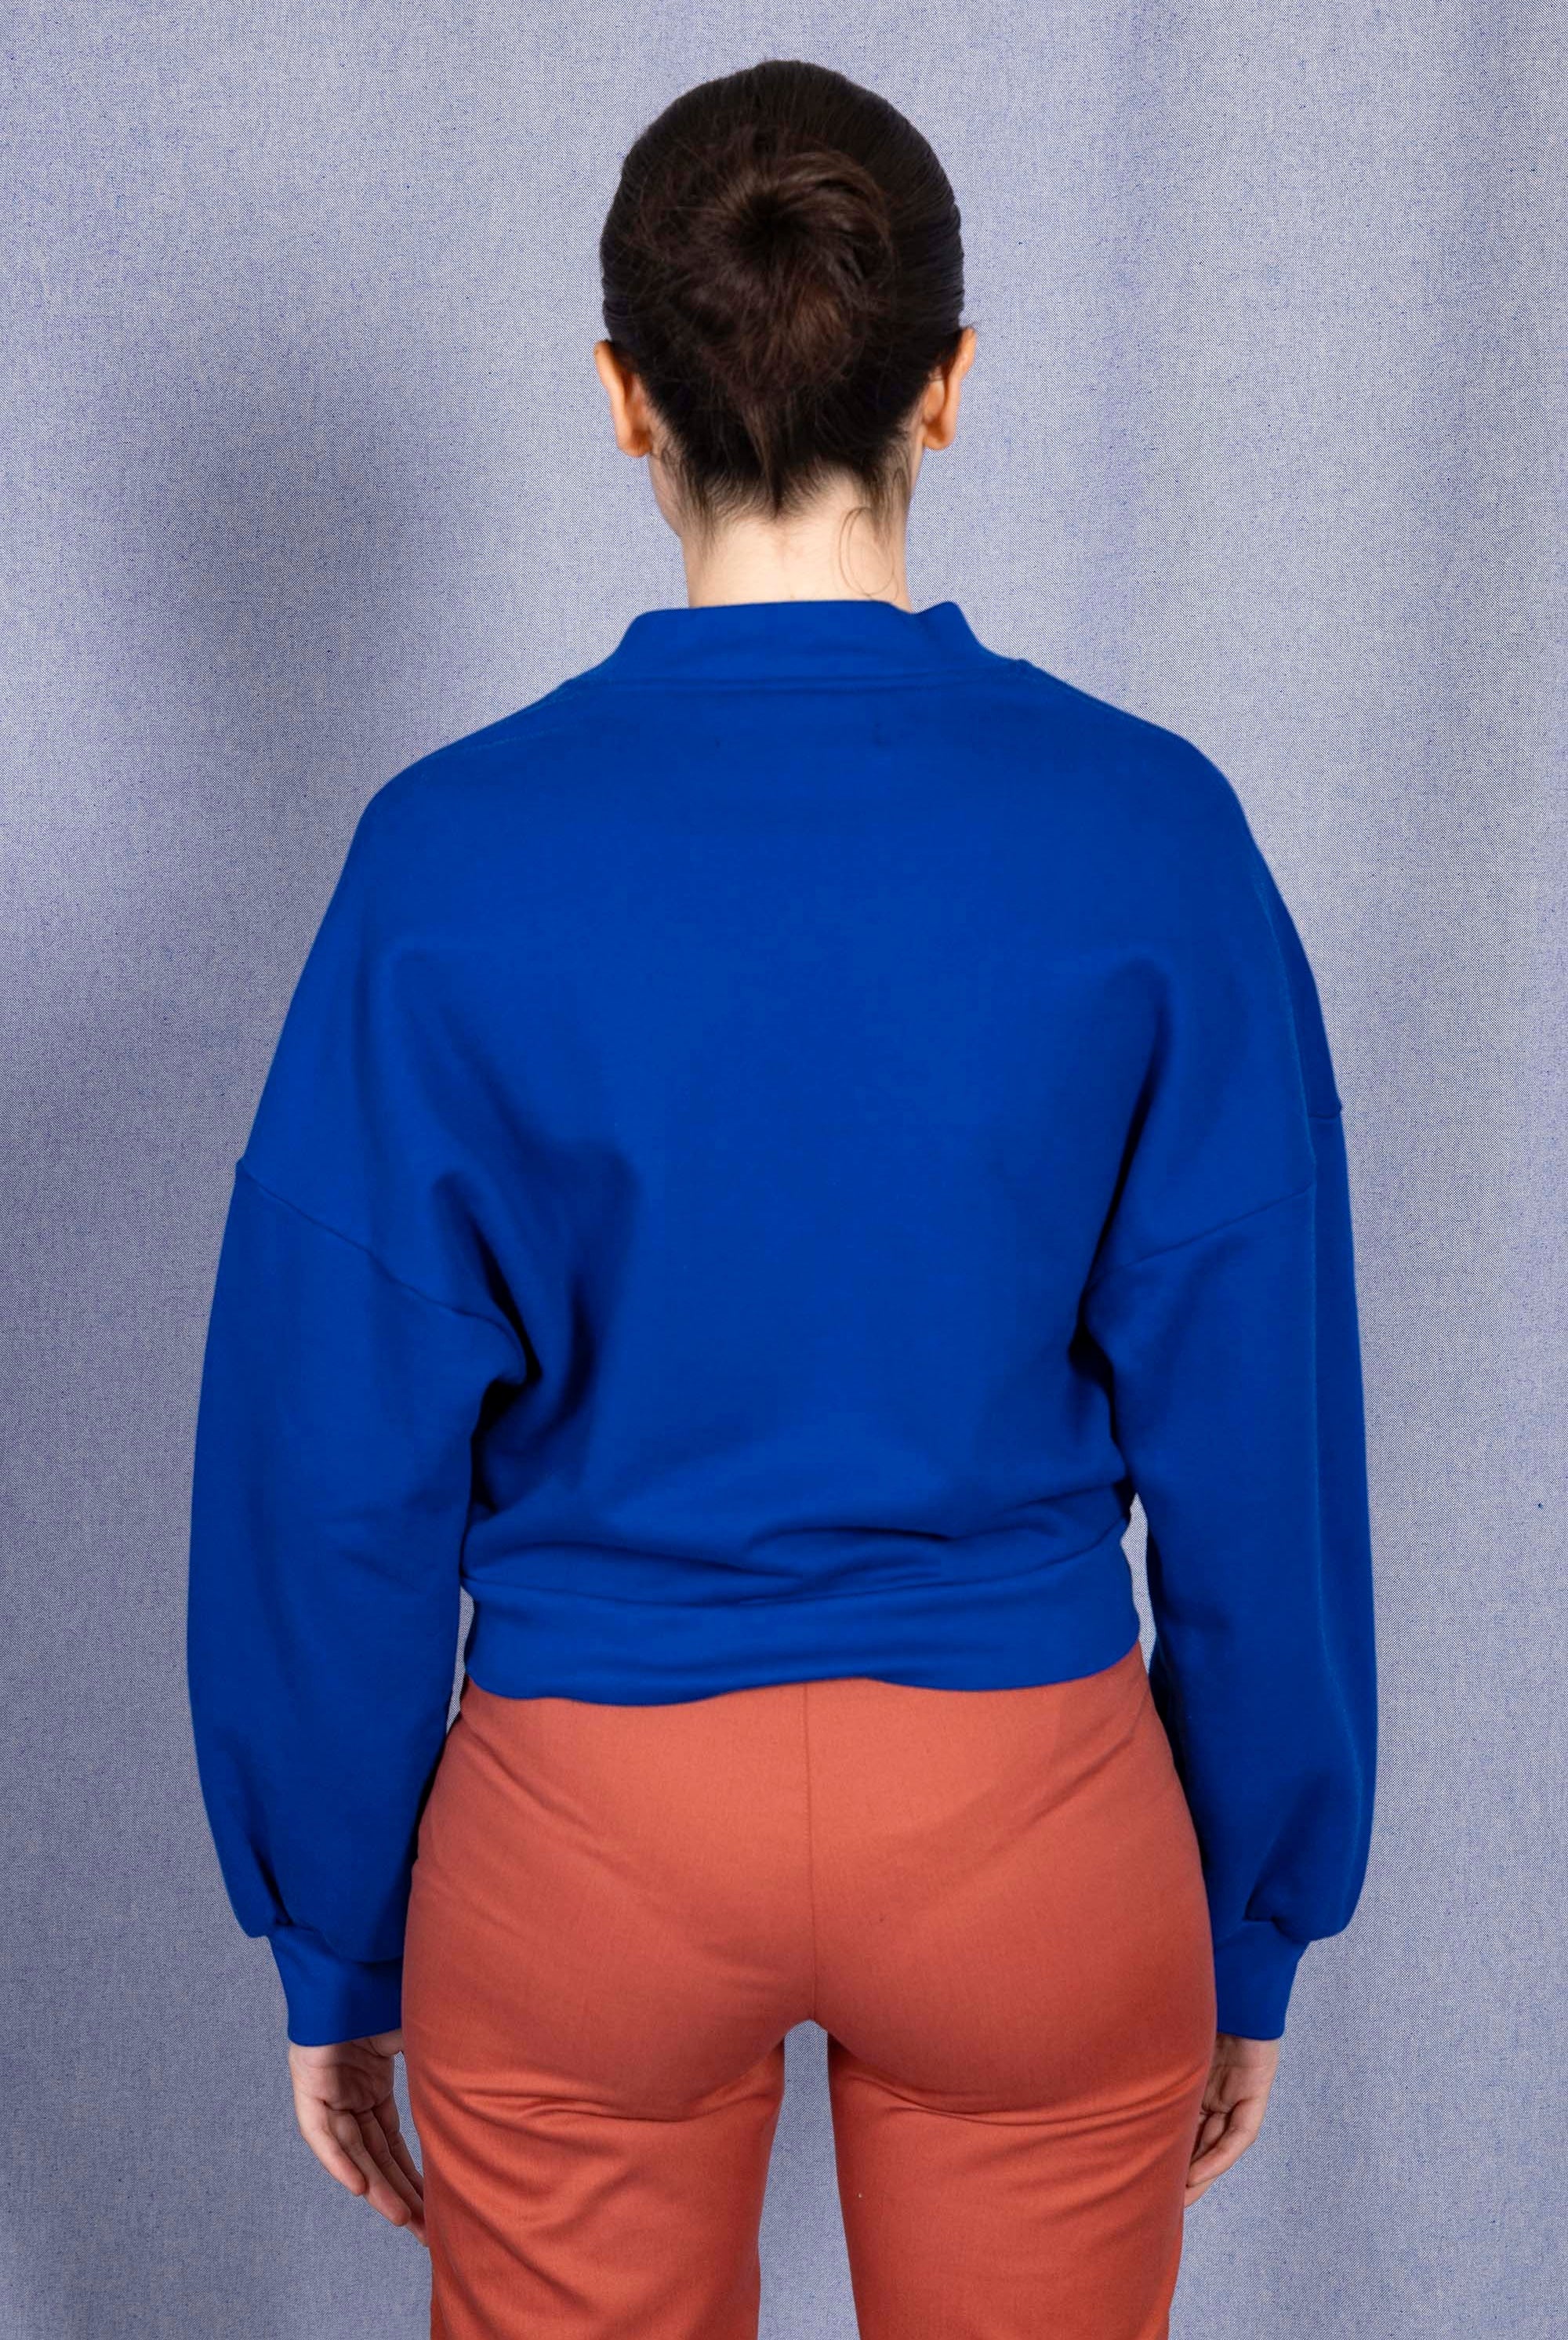 Sweatshirt Neola Bleu Saphir sweatshirt femme, pièce basique et vêtement cocooning du quotidien